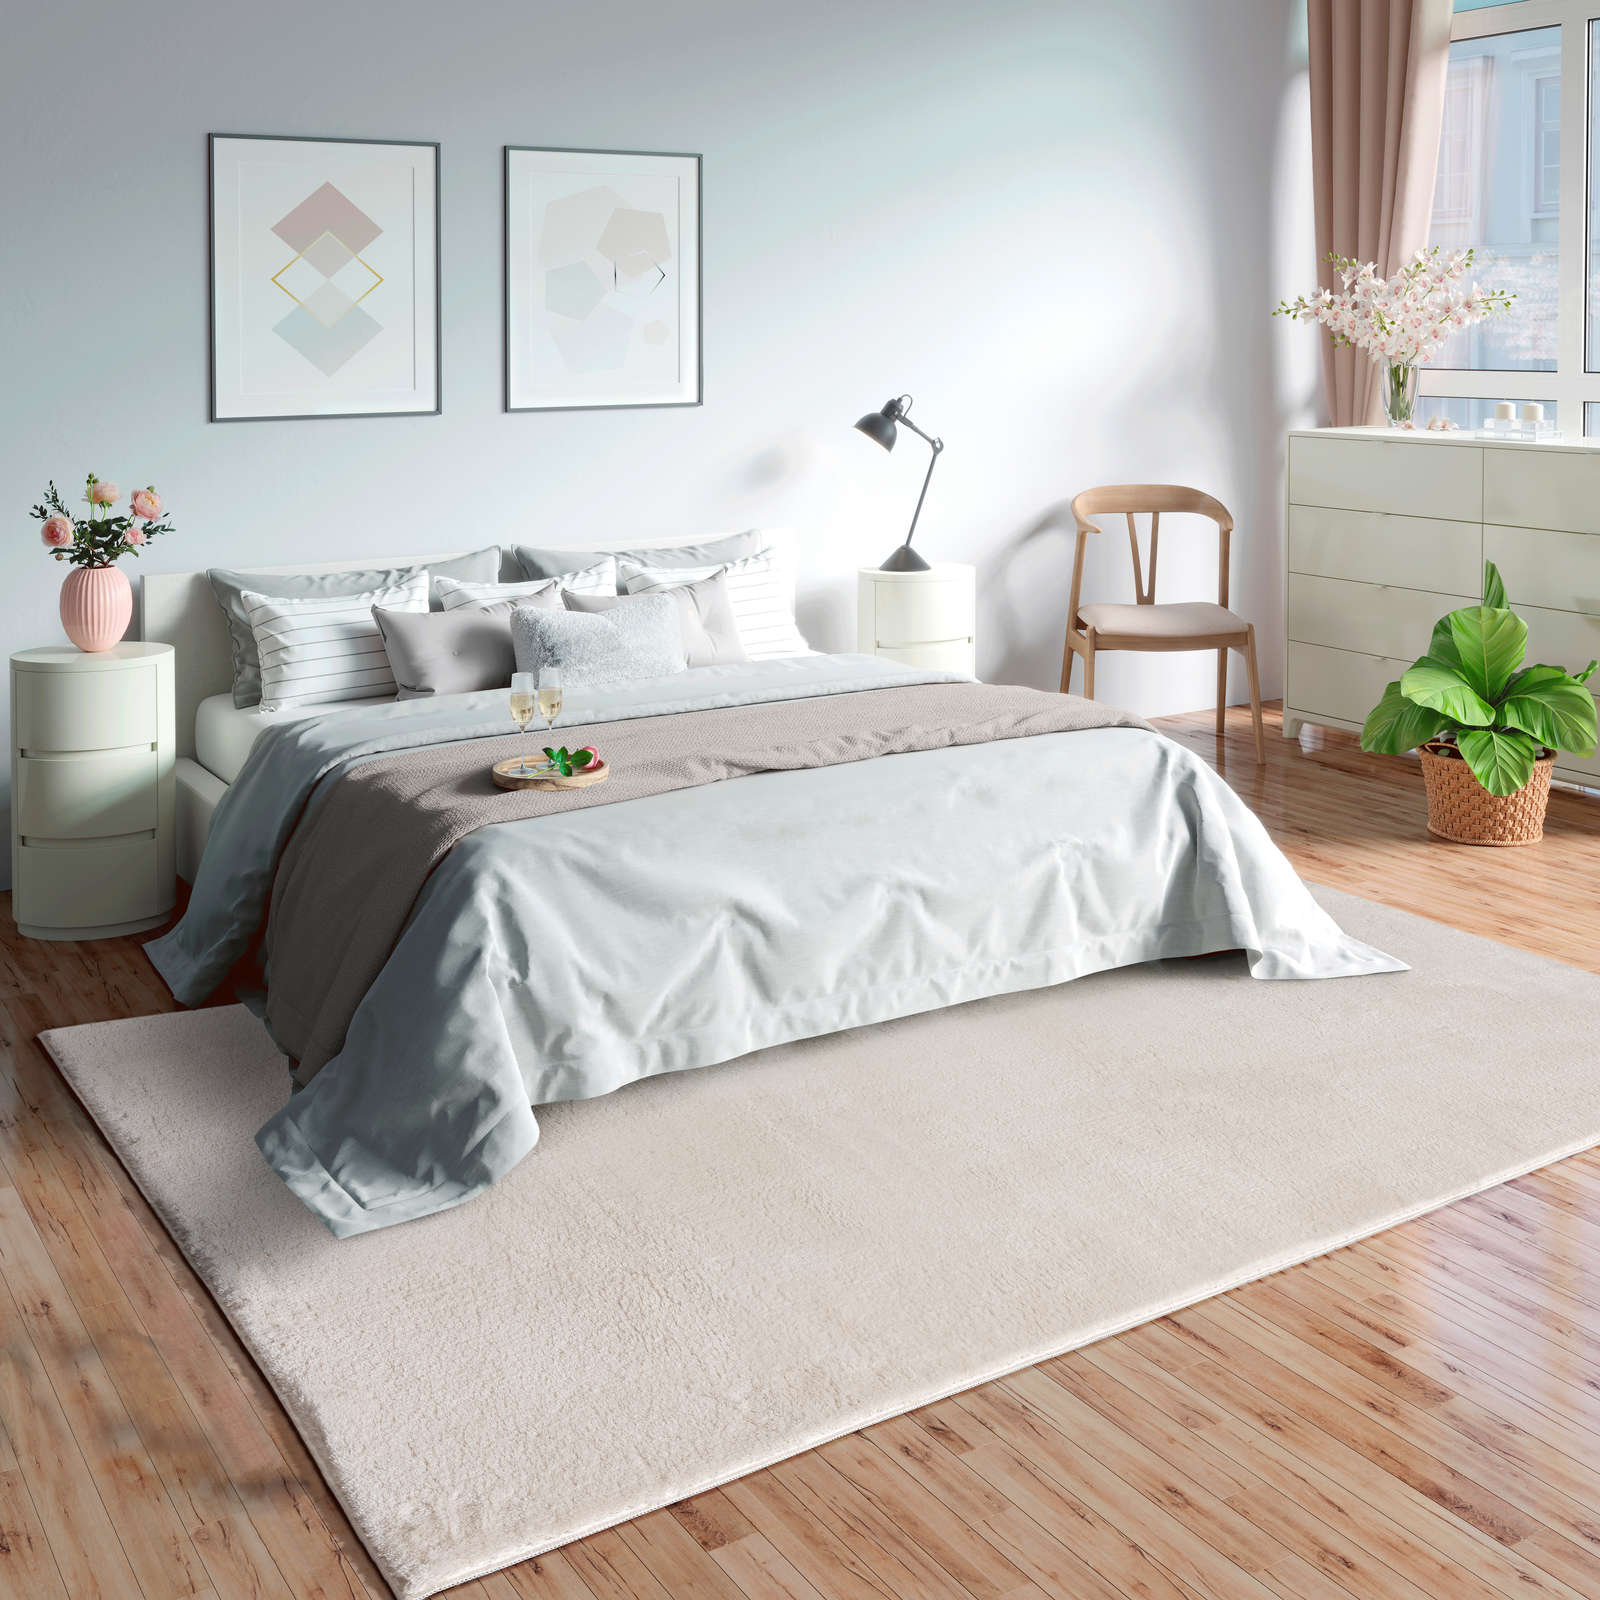             Fashionable high pile carpet in cream - 340 x 240 cm
        